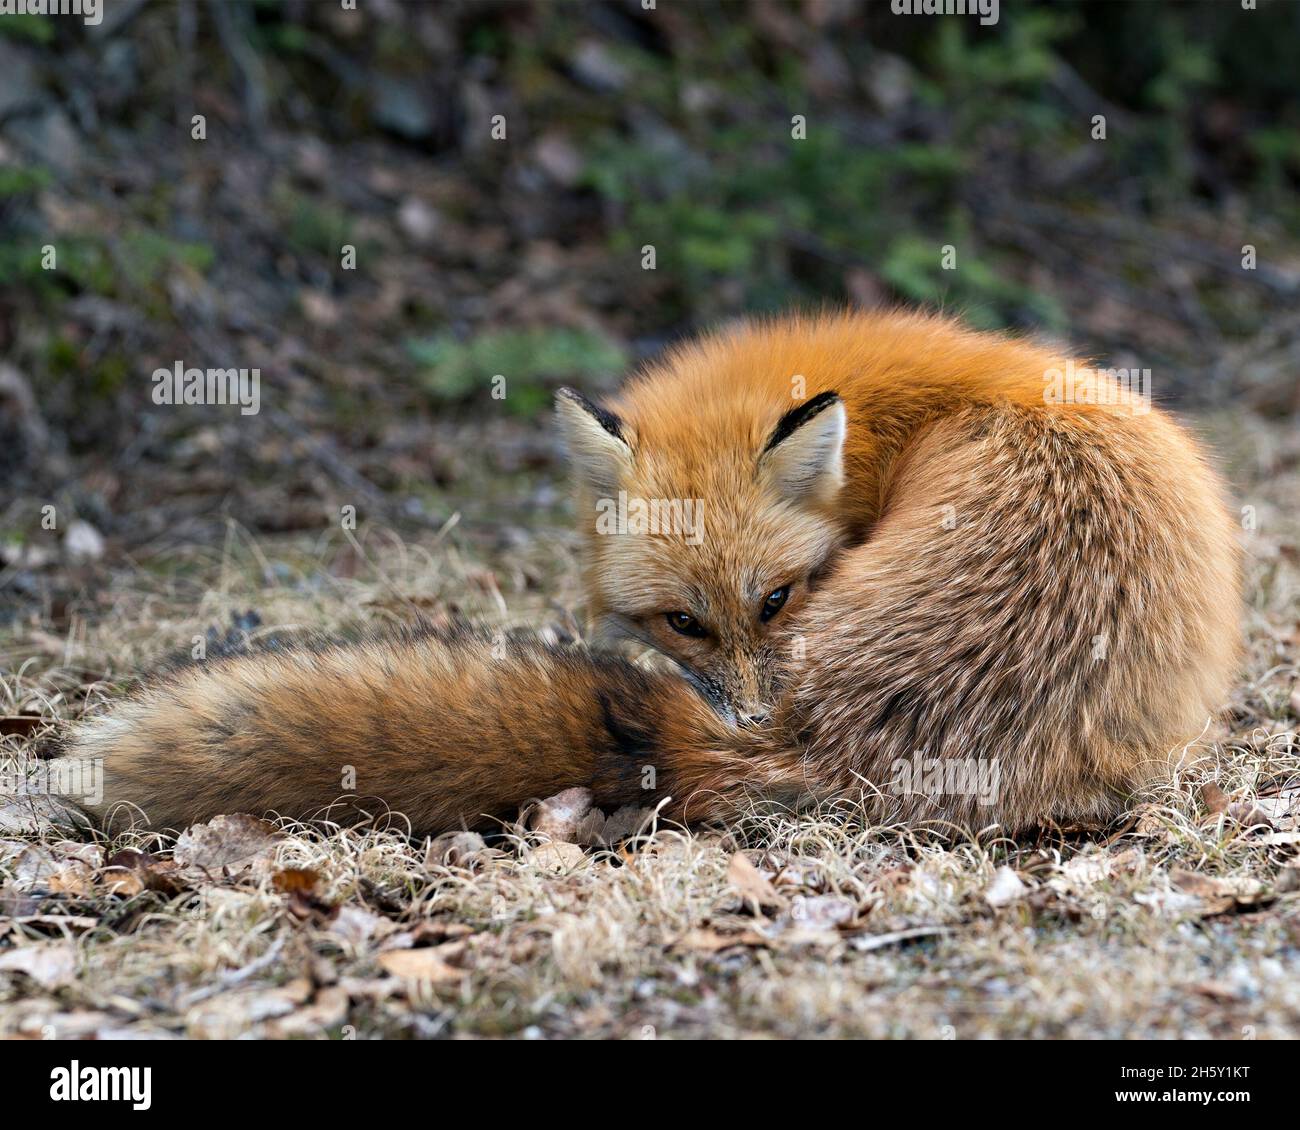 Red Fox primo piano nella stagione primaverile con sfondo sfocato nel suo ambiente e habitat che mostra coda e pelliccia folta. Immagine Fox. Immagine. Foto Stock